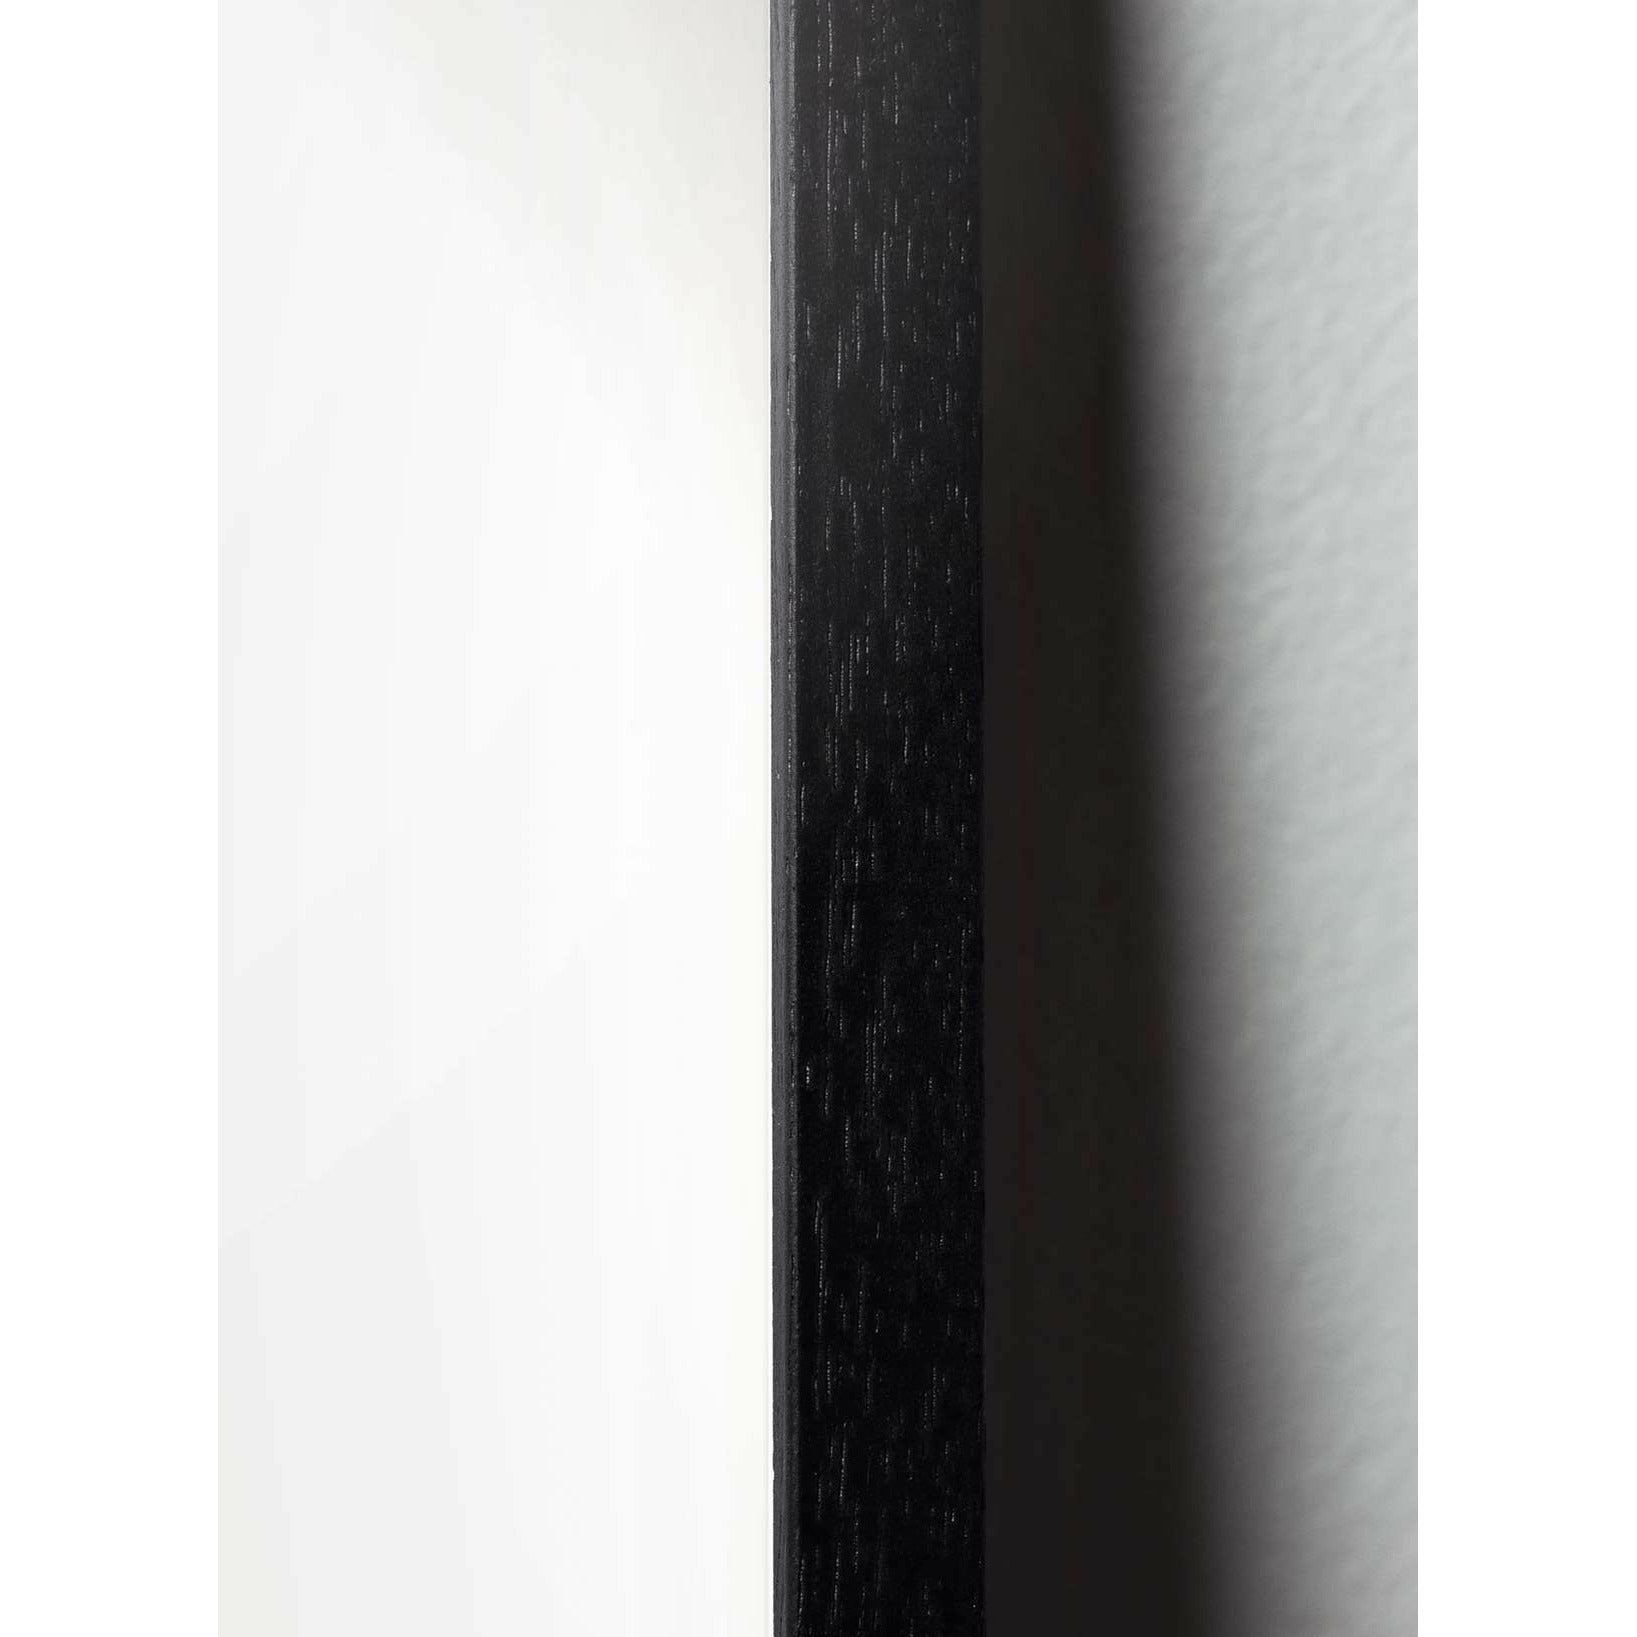 Brainchild Eierparade Poster, Rahmen aus schwarz lackiertem Holz, 50x70 Cm